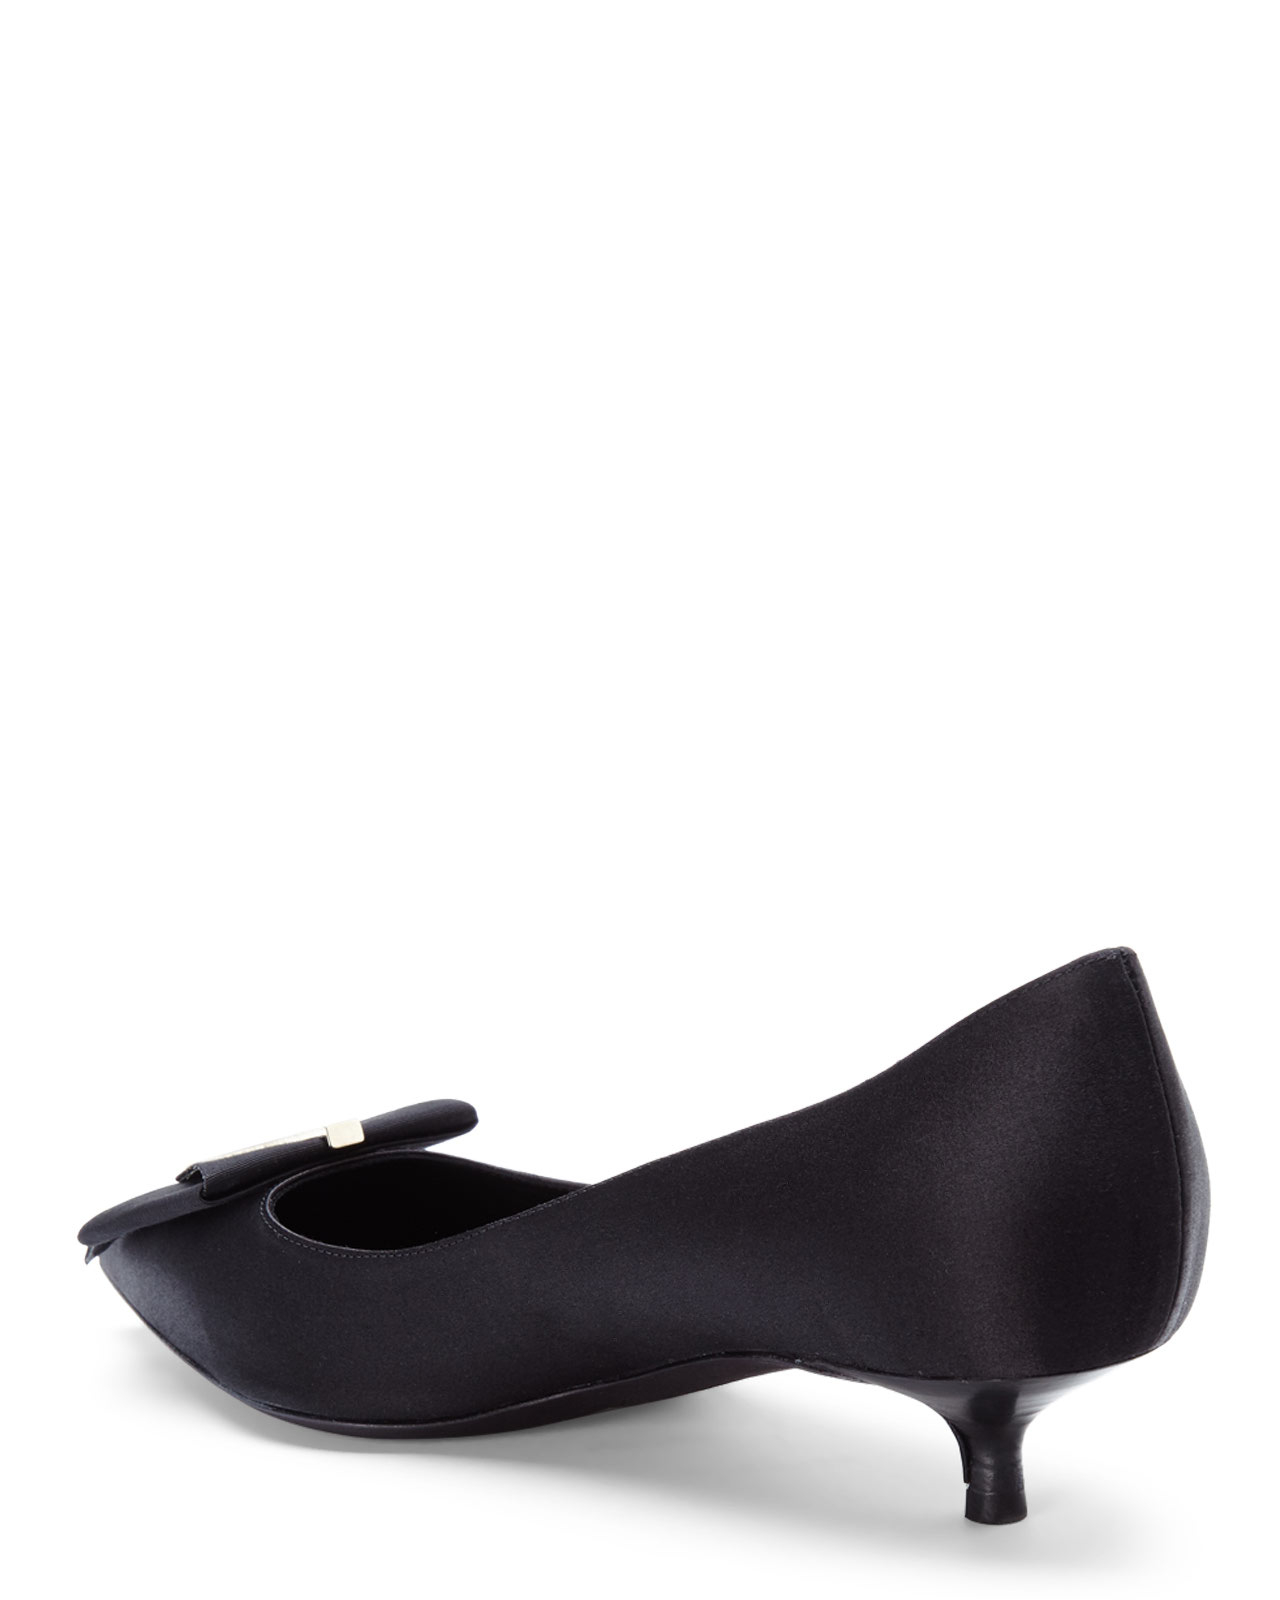 Giambattista valli Satin Bow Kitten Heels in Black | Lyst